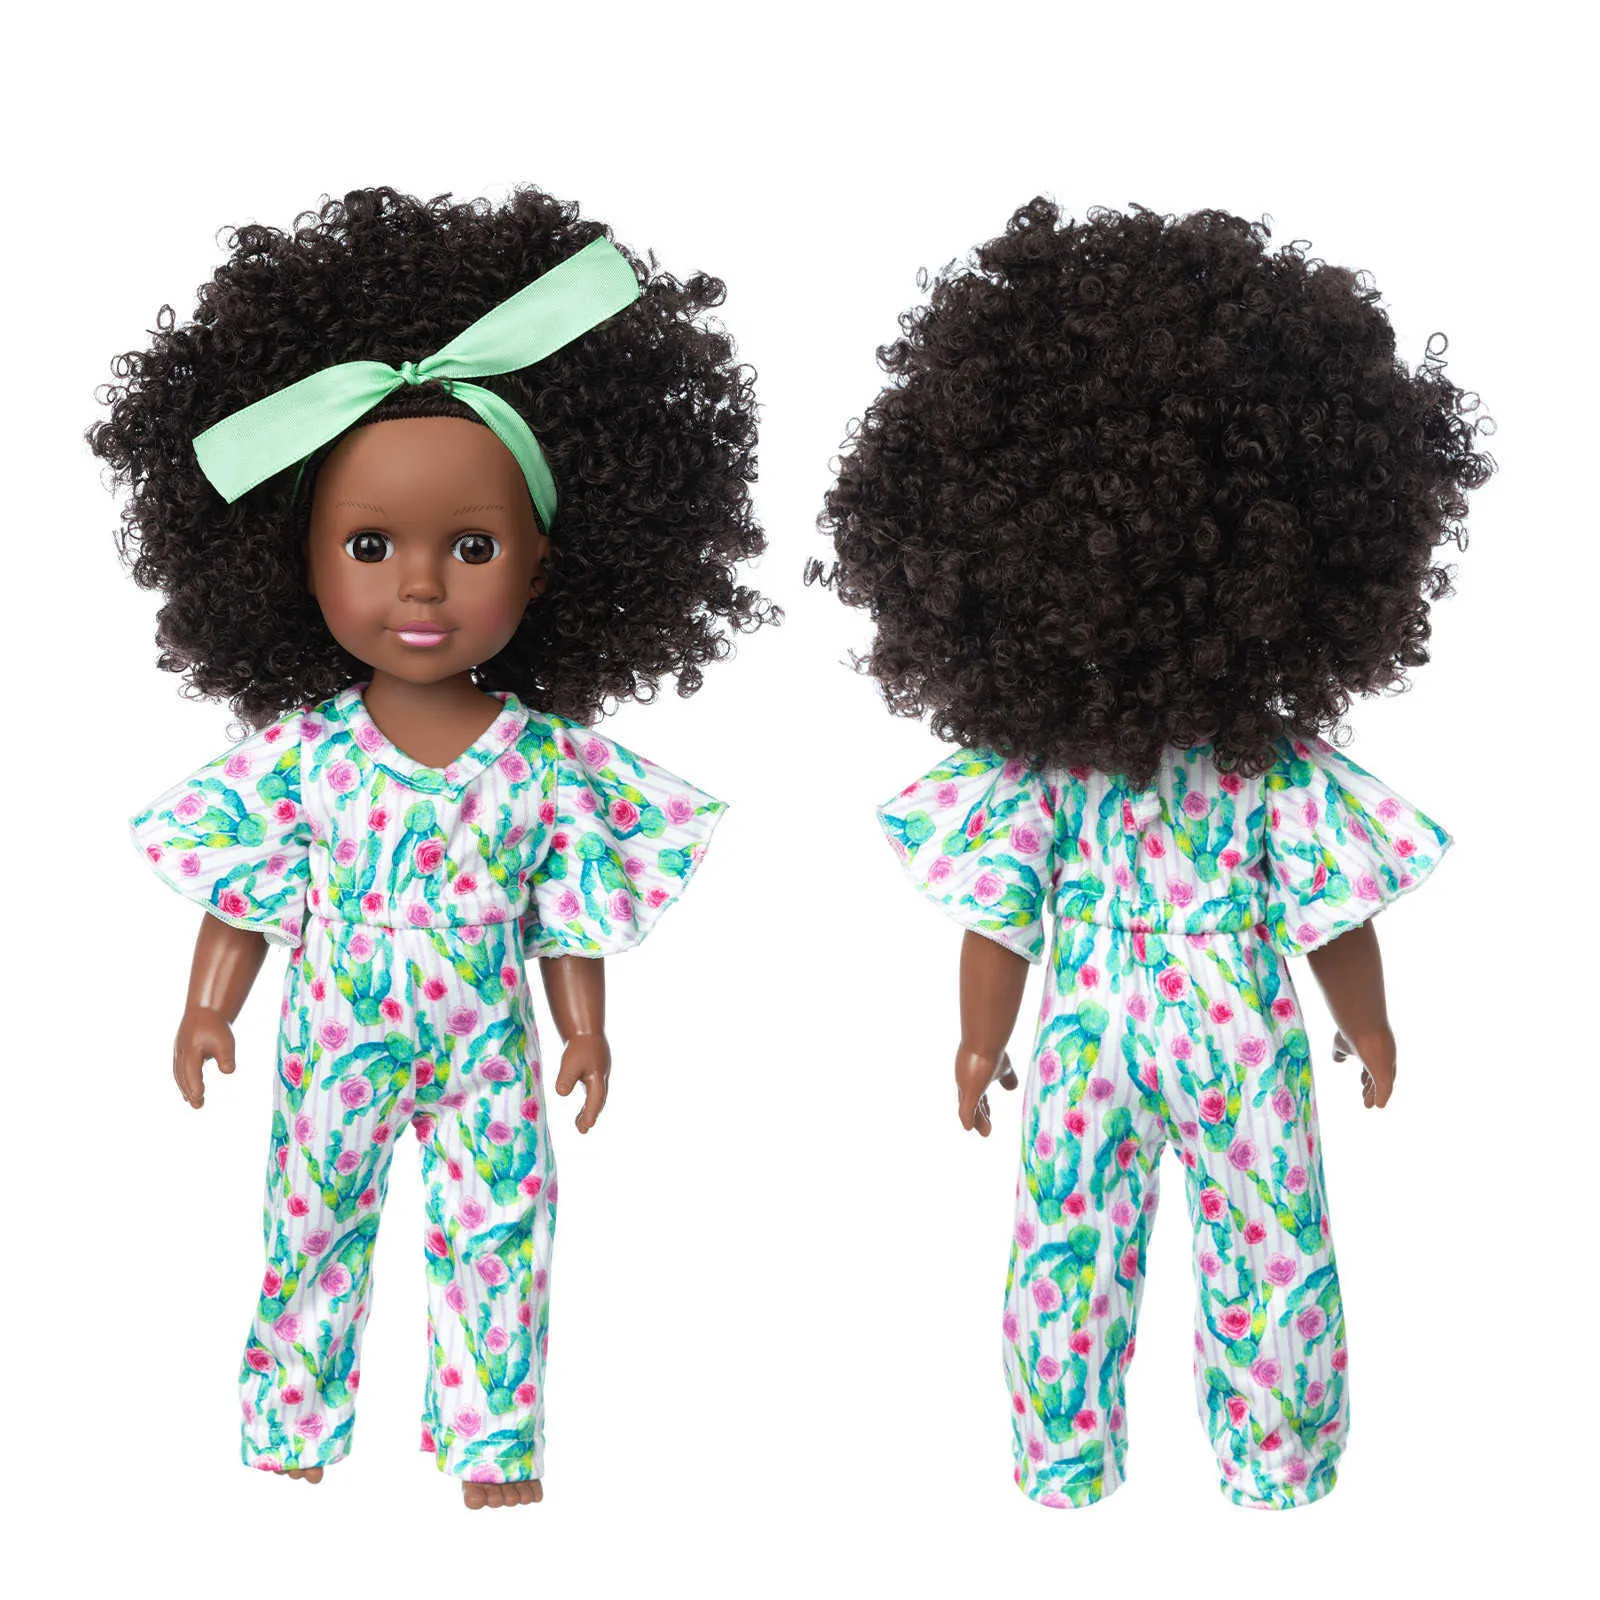 Siyah Kız Bebekler Afrika Amerikan Oyun Yumuşak Bebek Gerçekçi Bebekler Gerçekçi Simülasyon Bebek Oyun Bebekler Eğlenceli Çocuk Oyuncak Hediyeler Hediye Q0910